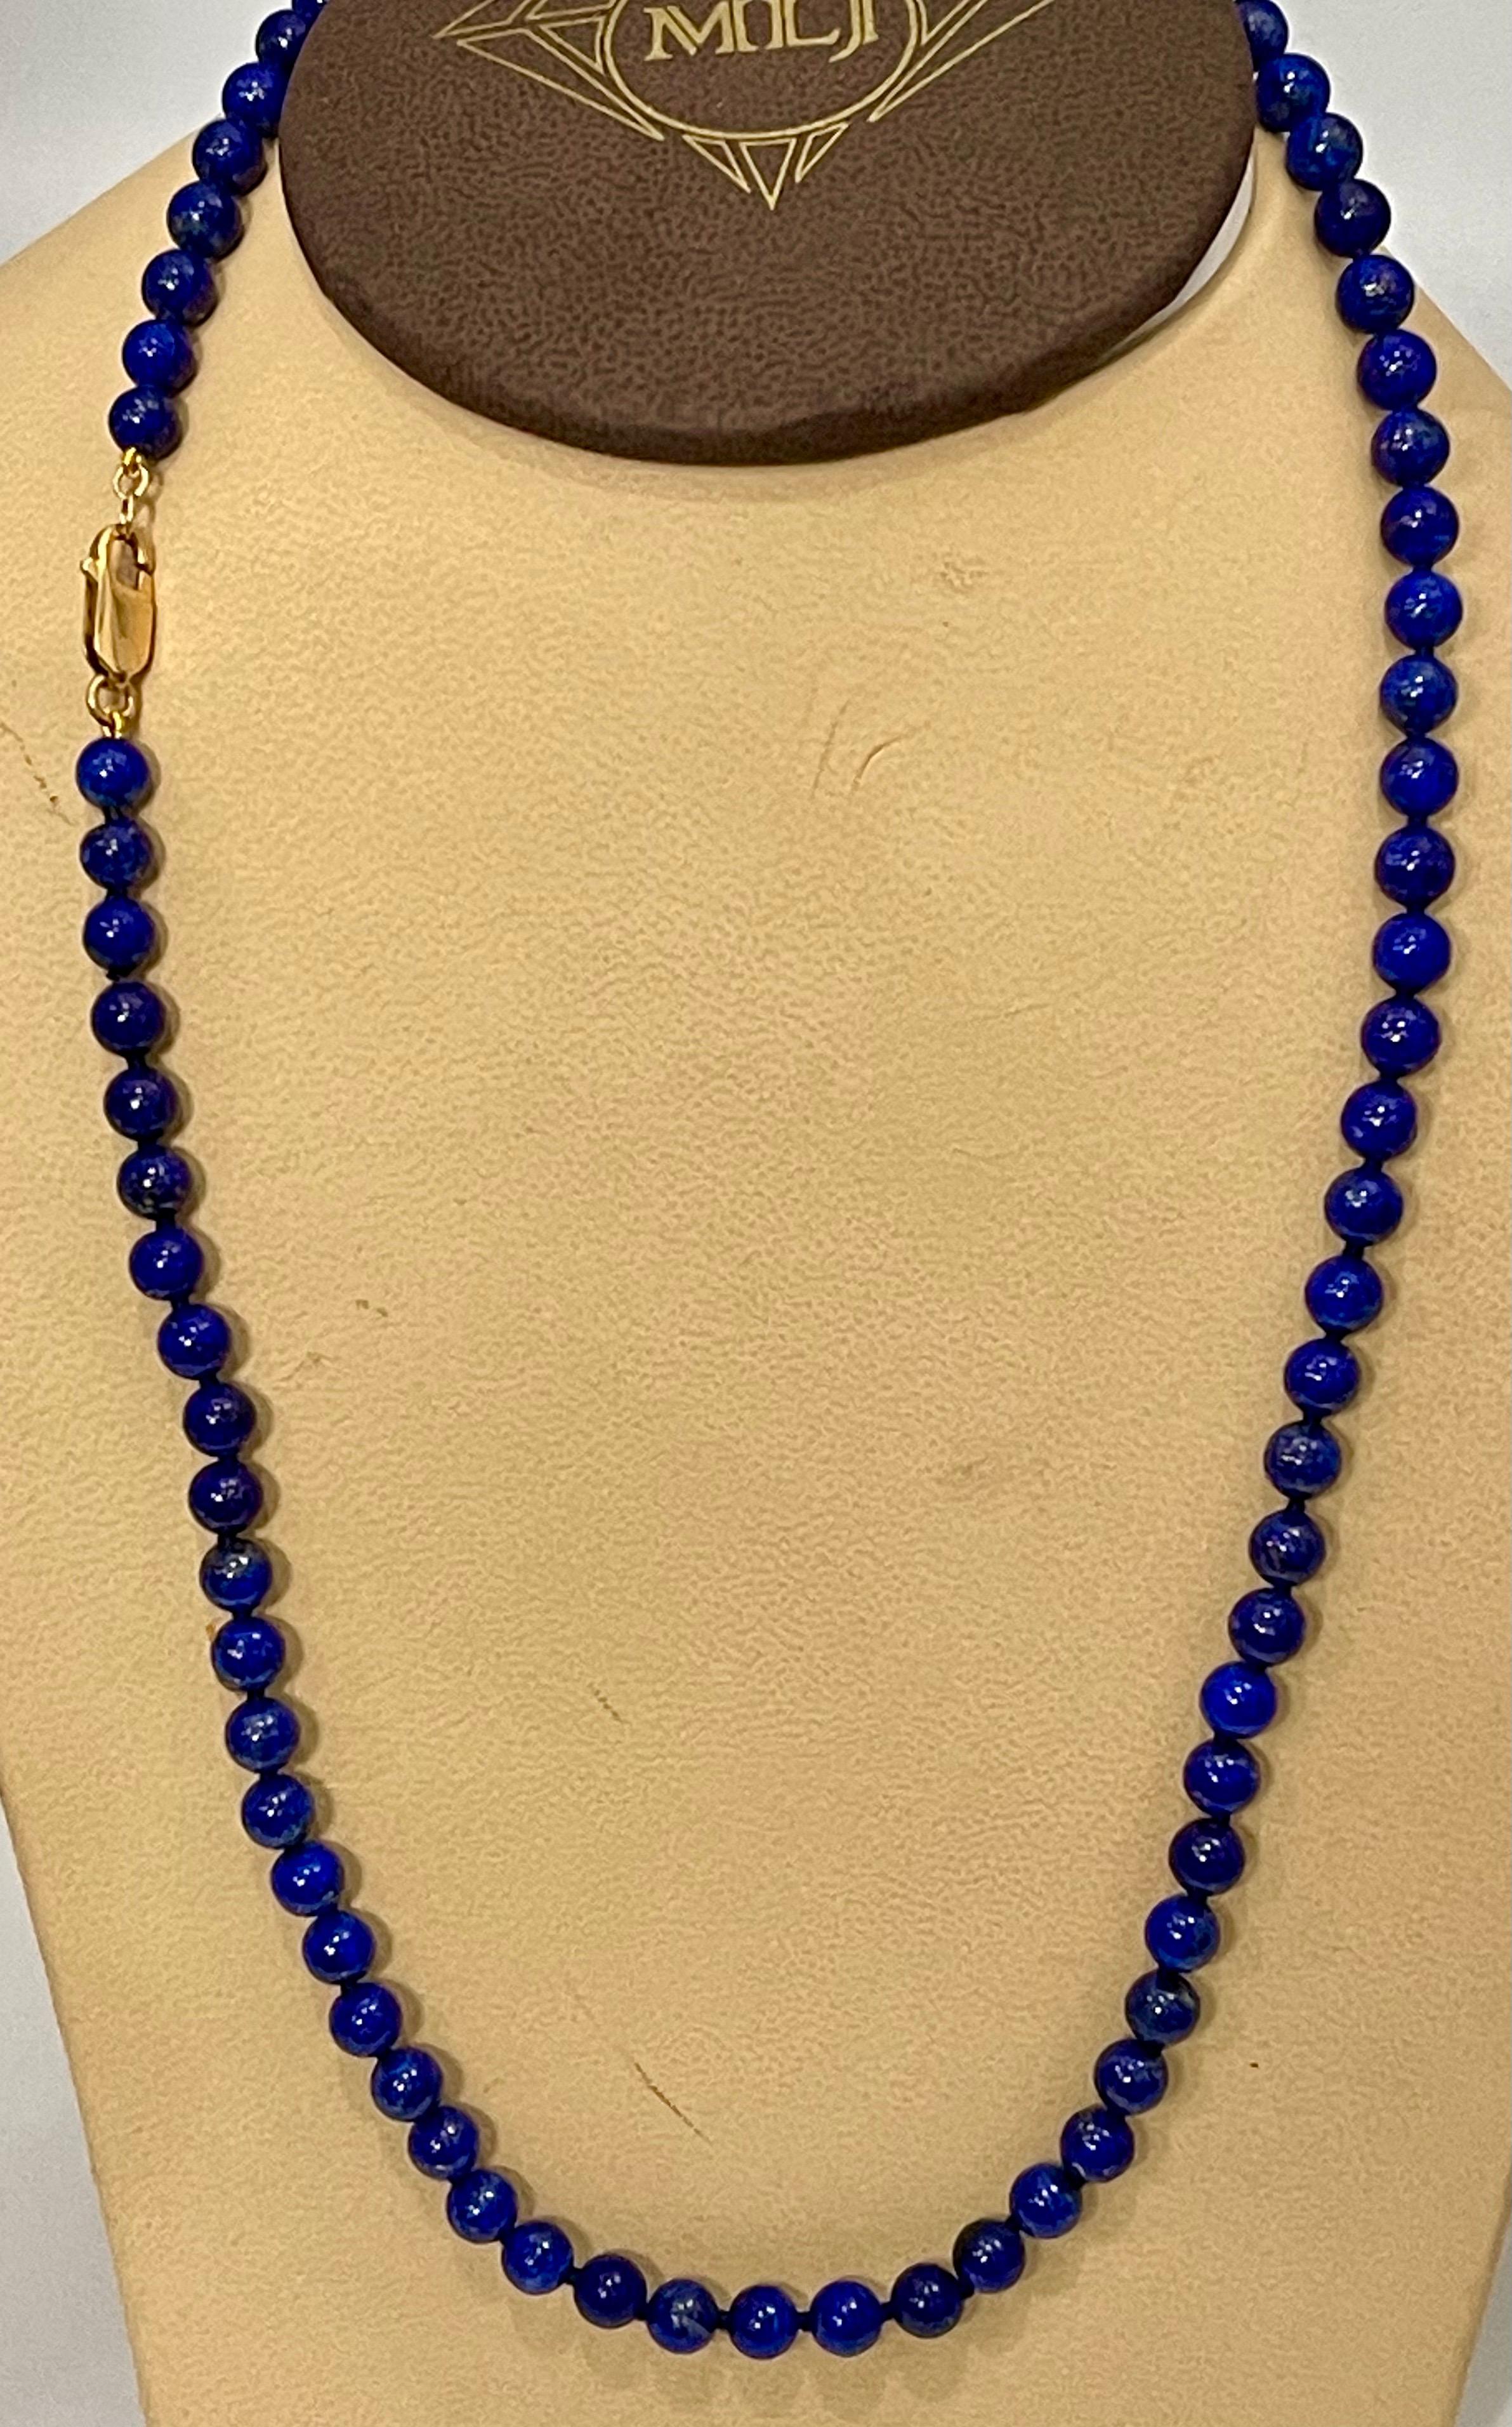 Vintage Lapislazuli Einzelstrang Halskette mit 14 Karat Gelbgold  schwerer Gelbgoldkarabinerverschluss
Diese wunderbare Vintage Lapis Lazuli  Halskette mit 1 Reihe üppiger  Perlen
(Messung von ungefähr durchschnittlichen  6,5 mm)  
Strang ist 21